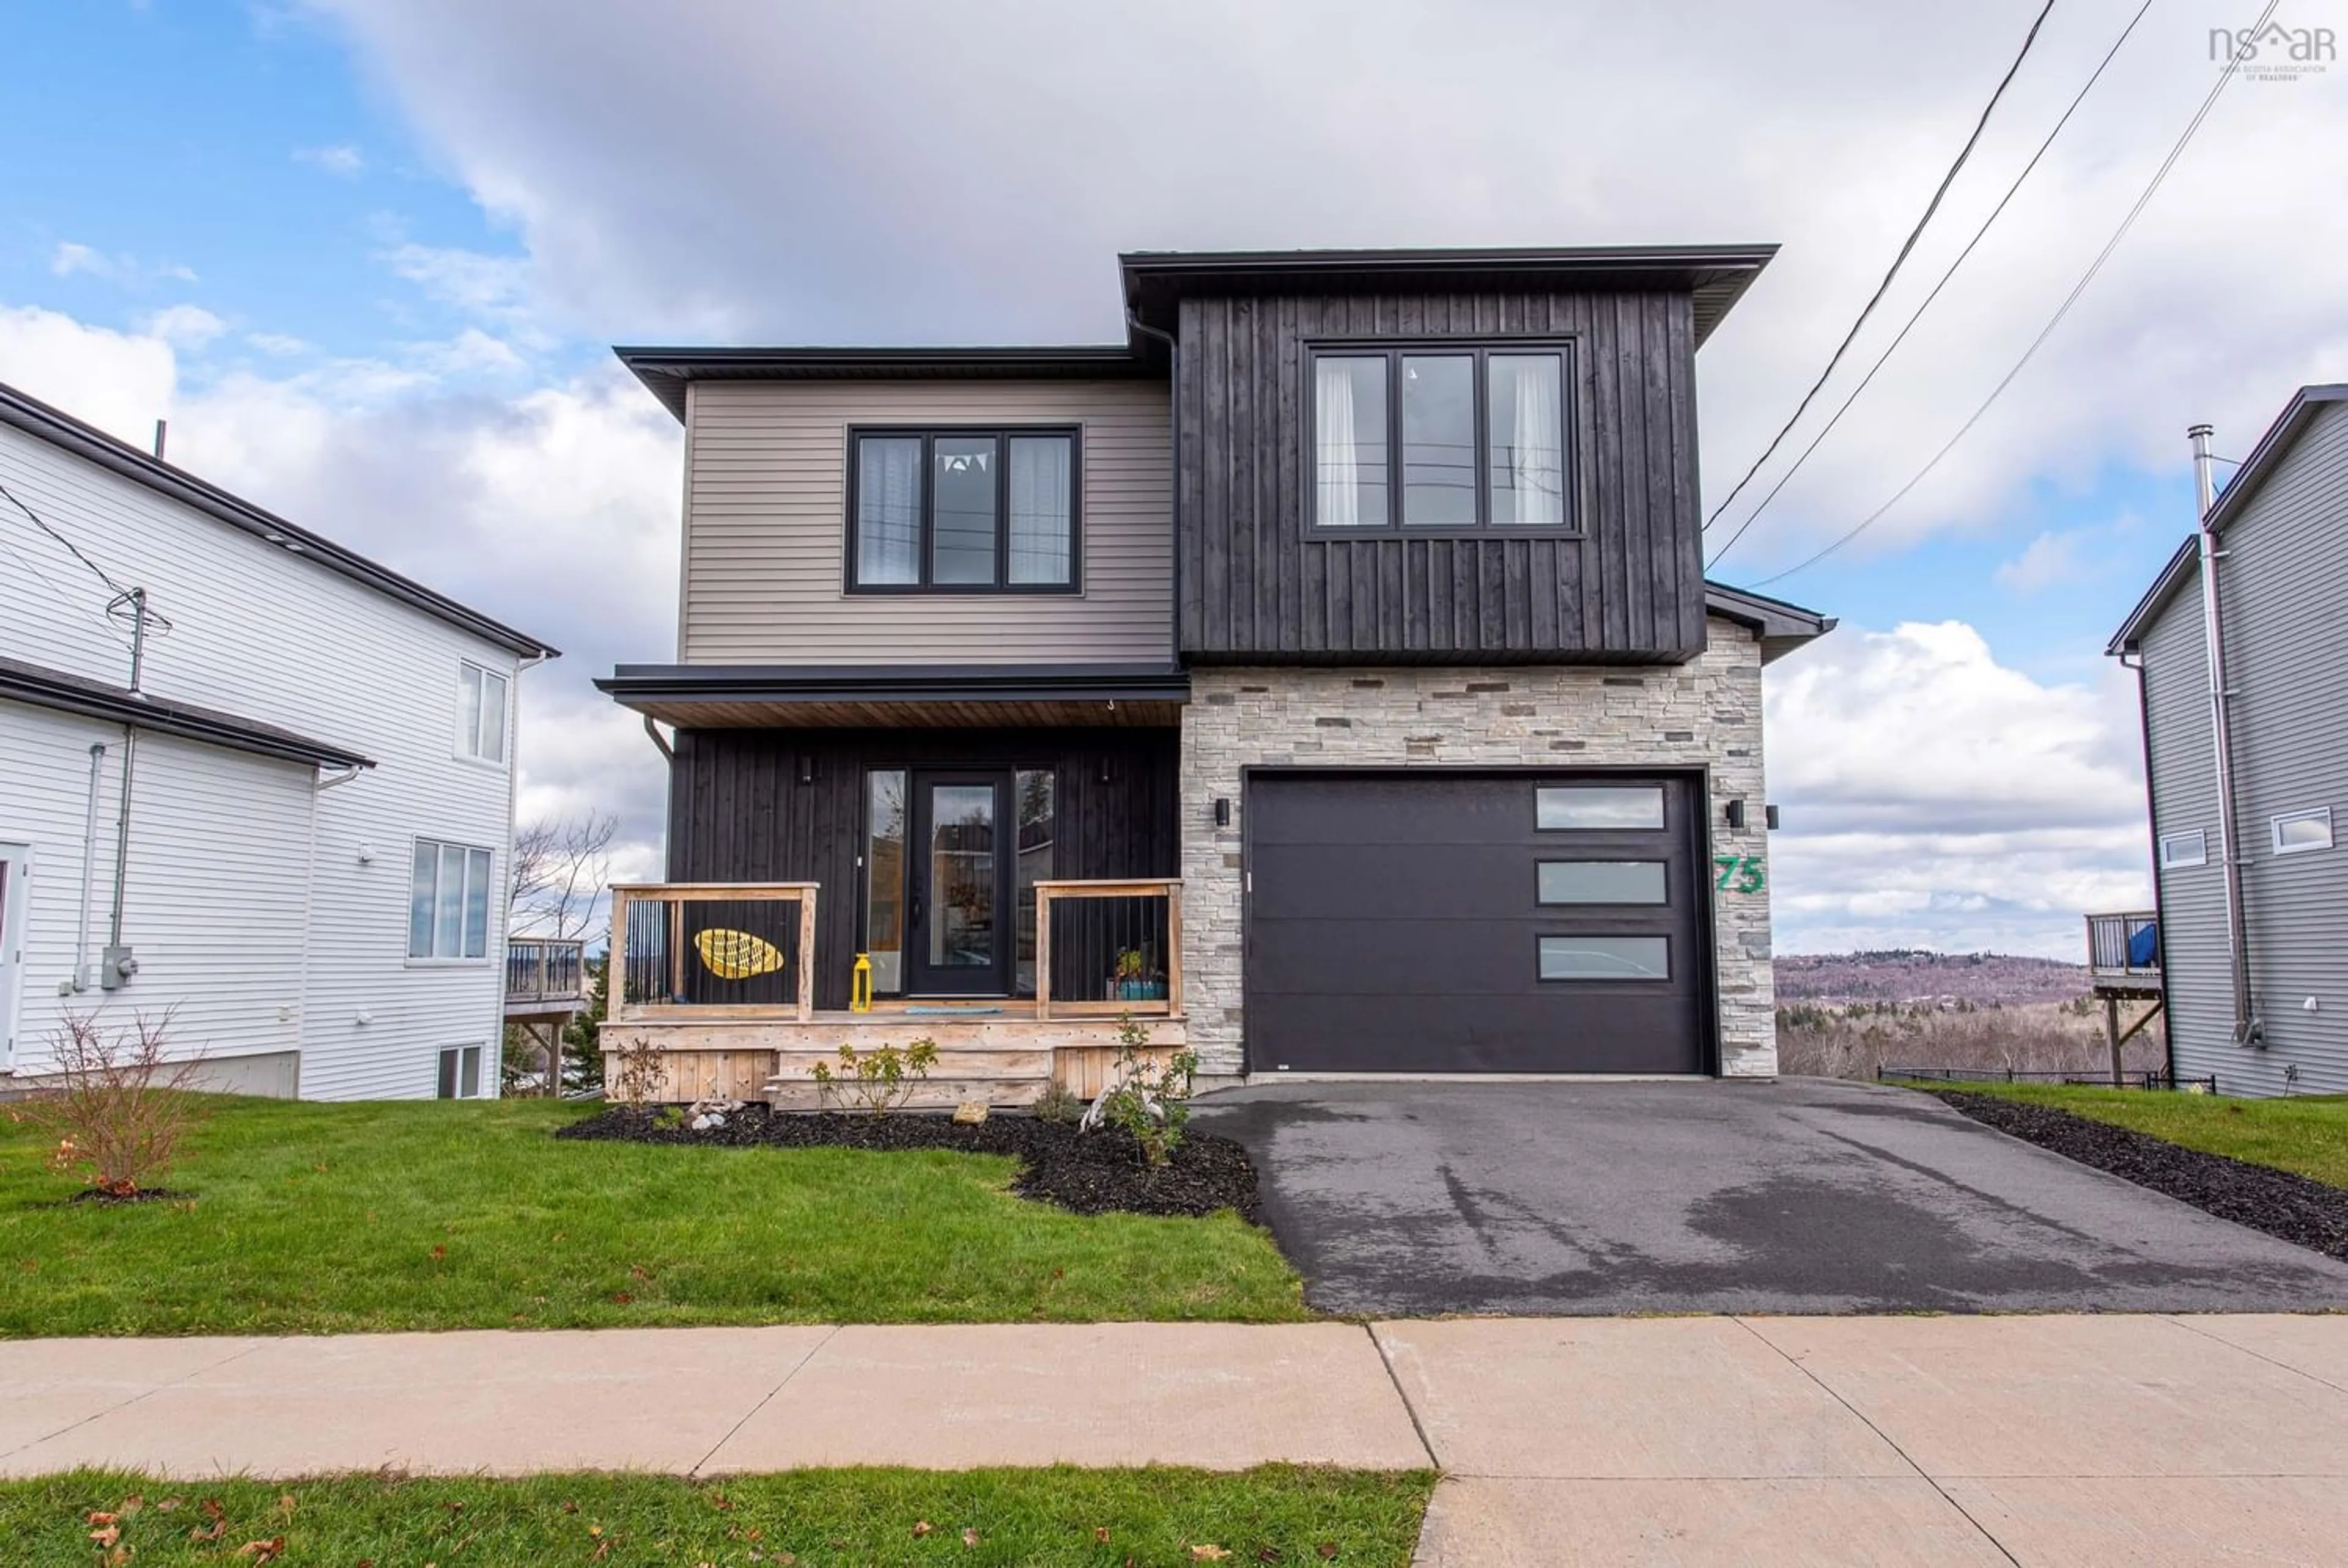 Home with stone exterior material for 75 Glen Baker Dr, Halifax Nova Scotia B3R 0E1